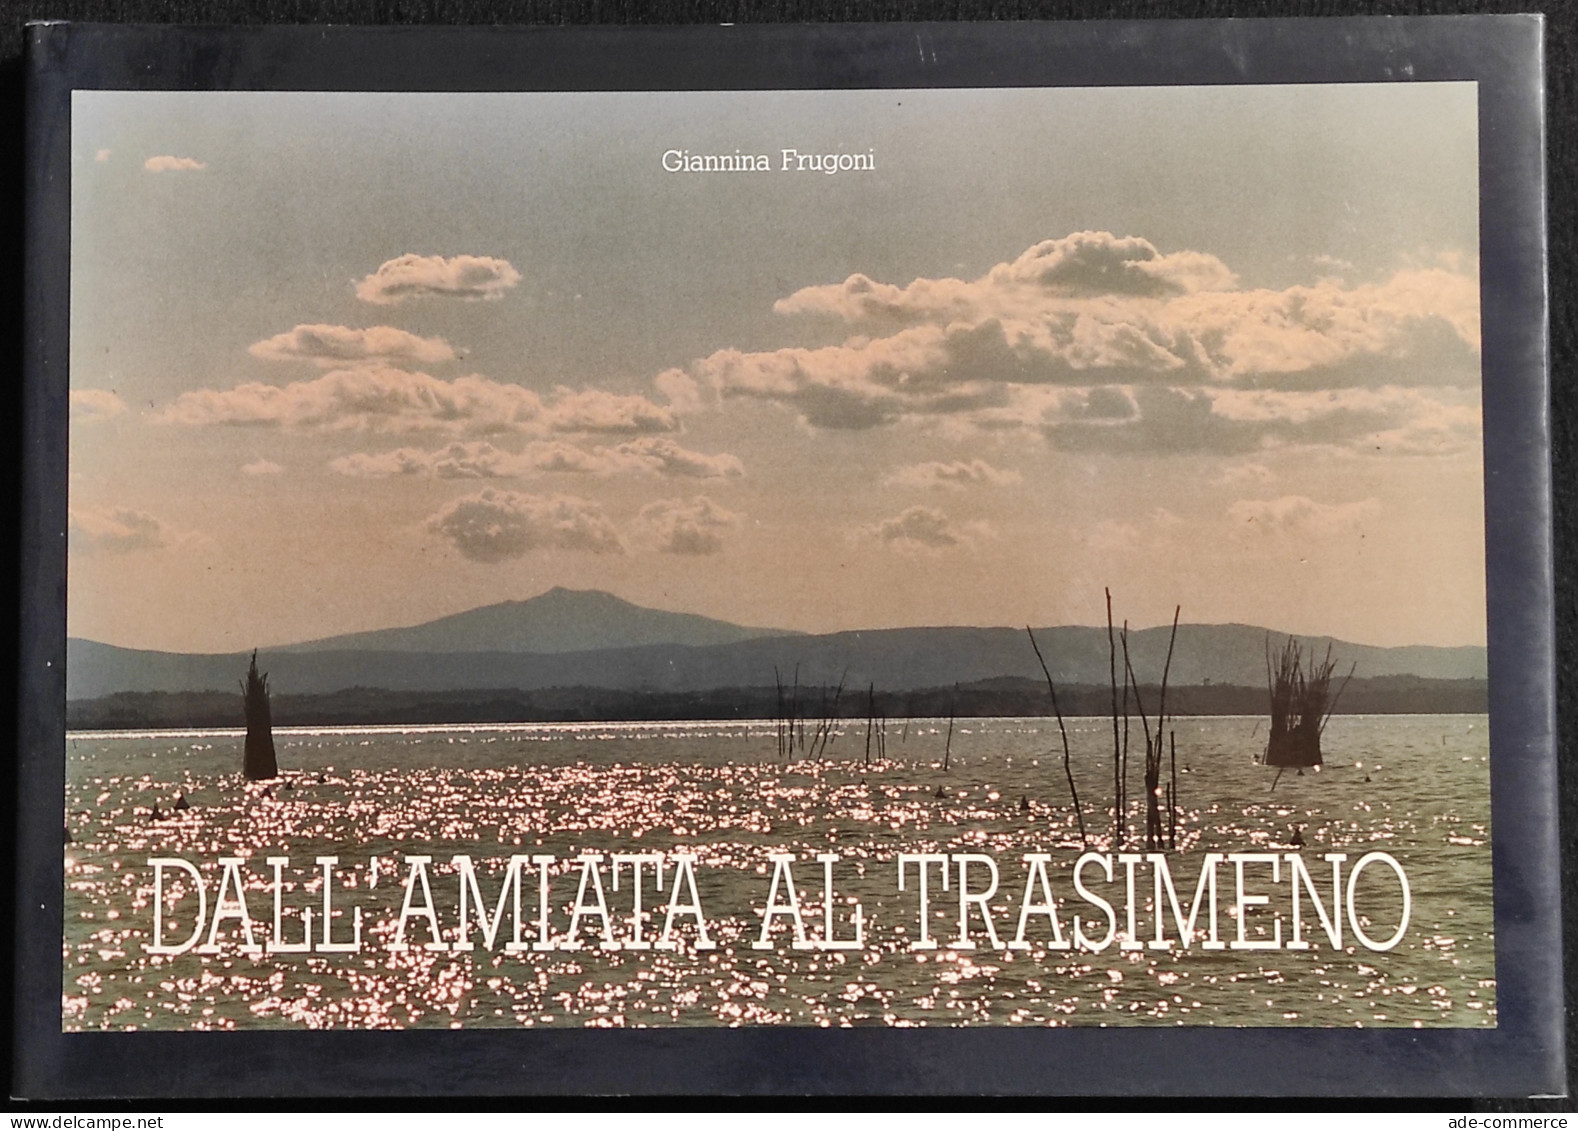 Dall'Amiata Al Transimeno - G. Frugoni - Volumnia Ed. - 1990 - Pictures